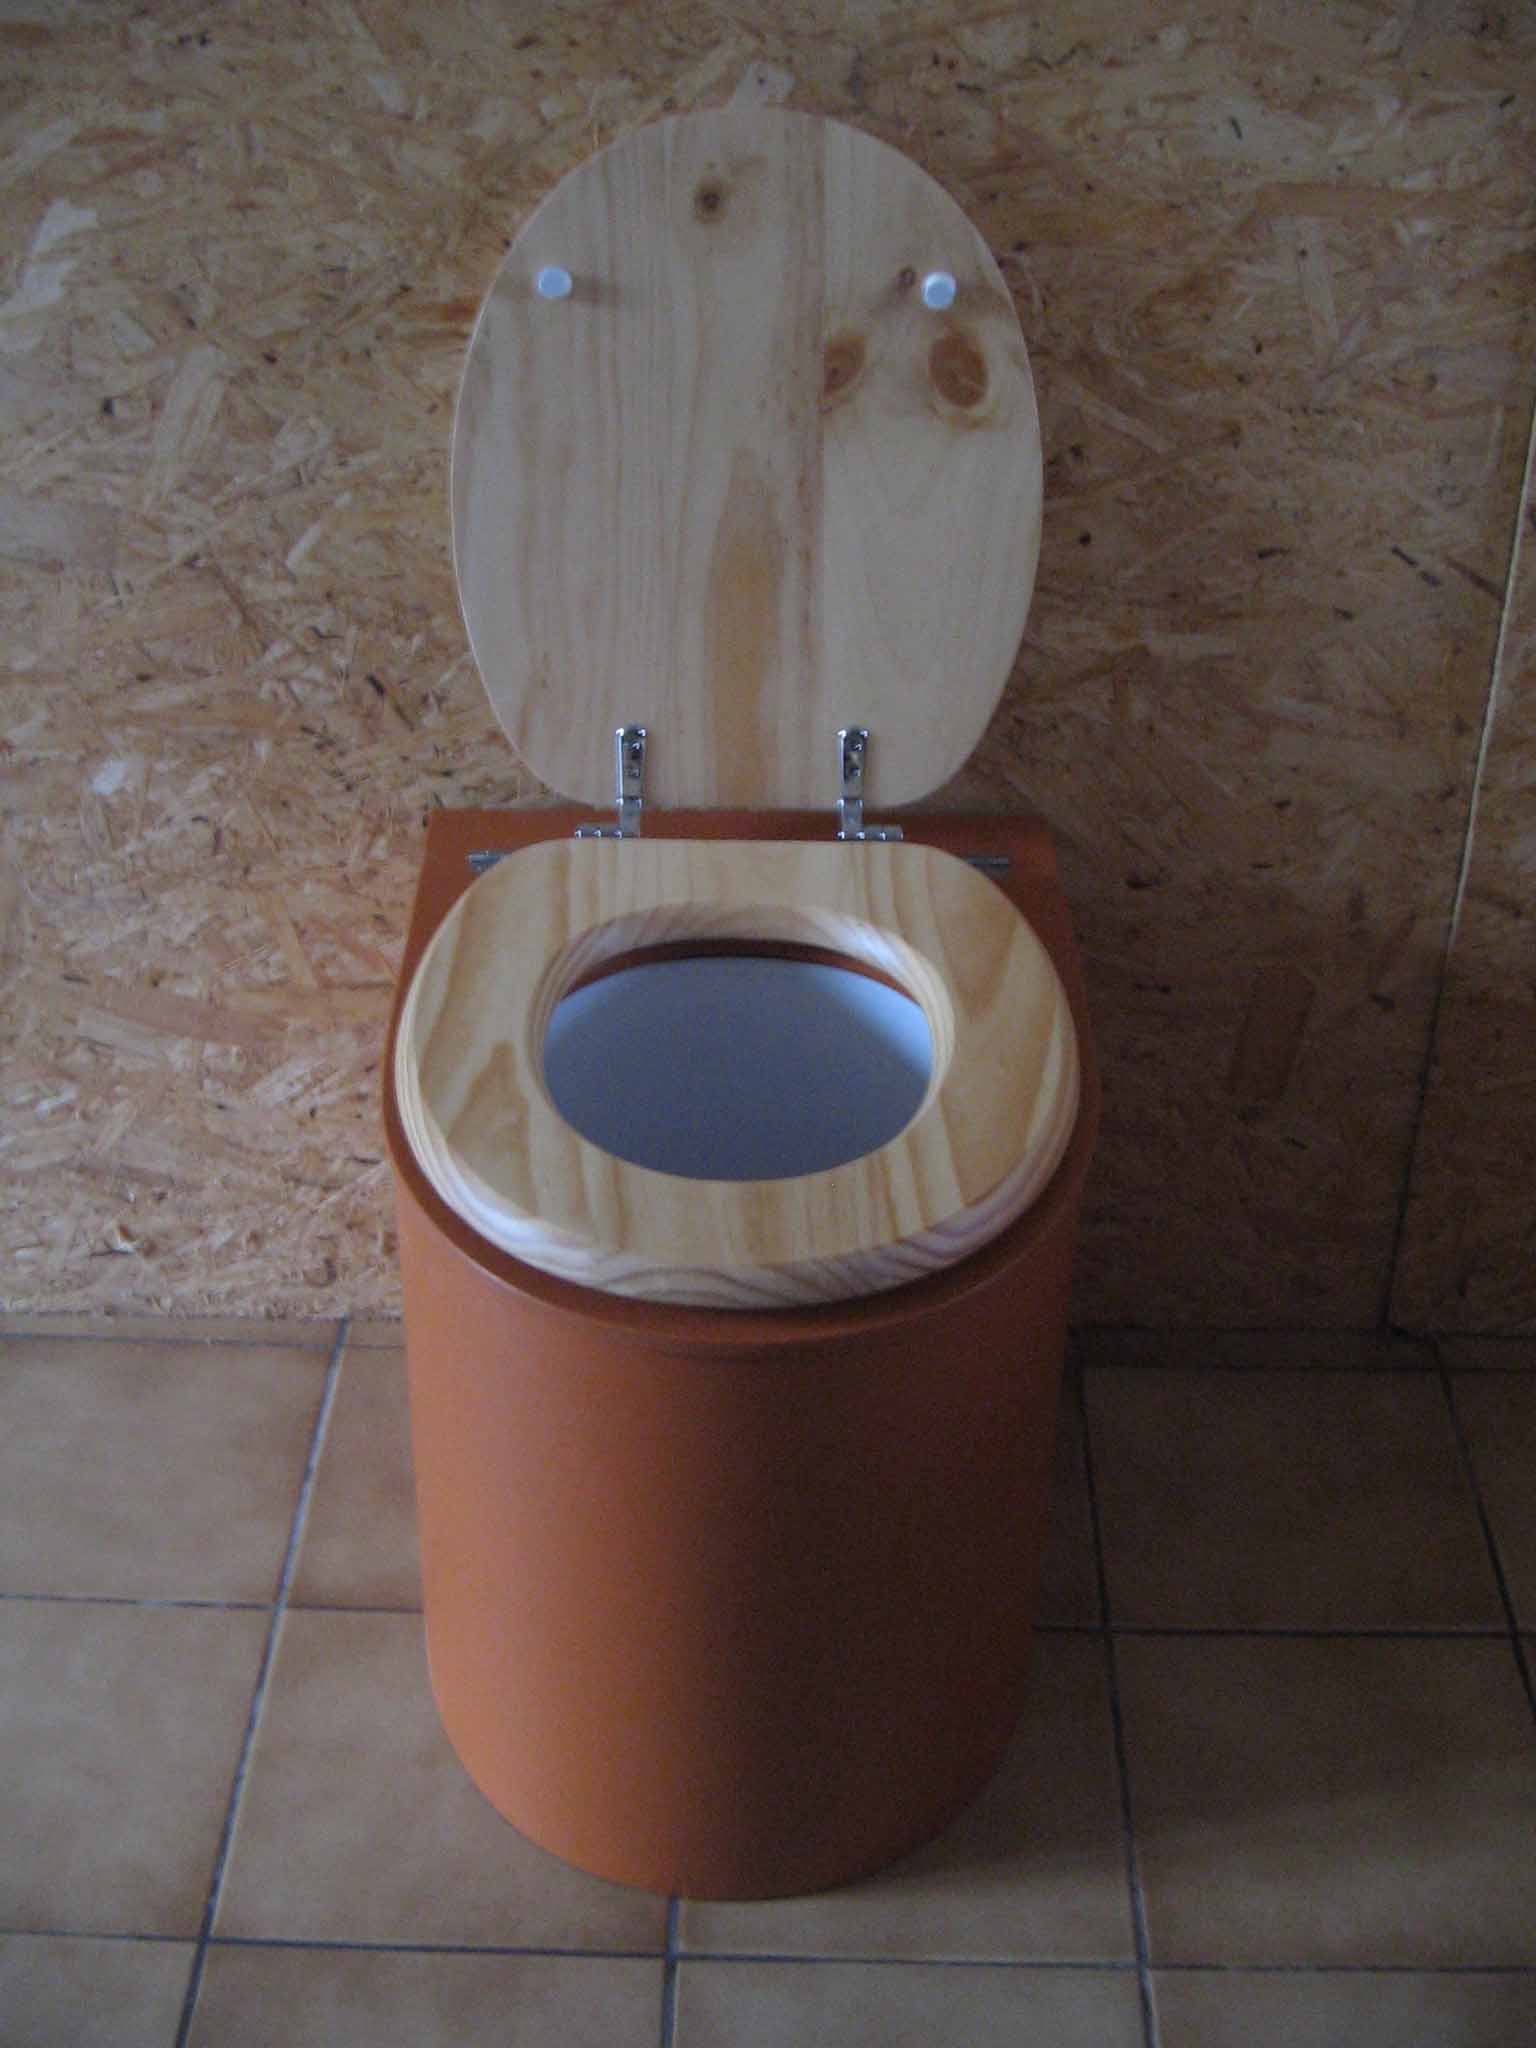 Toilette seche design orange